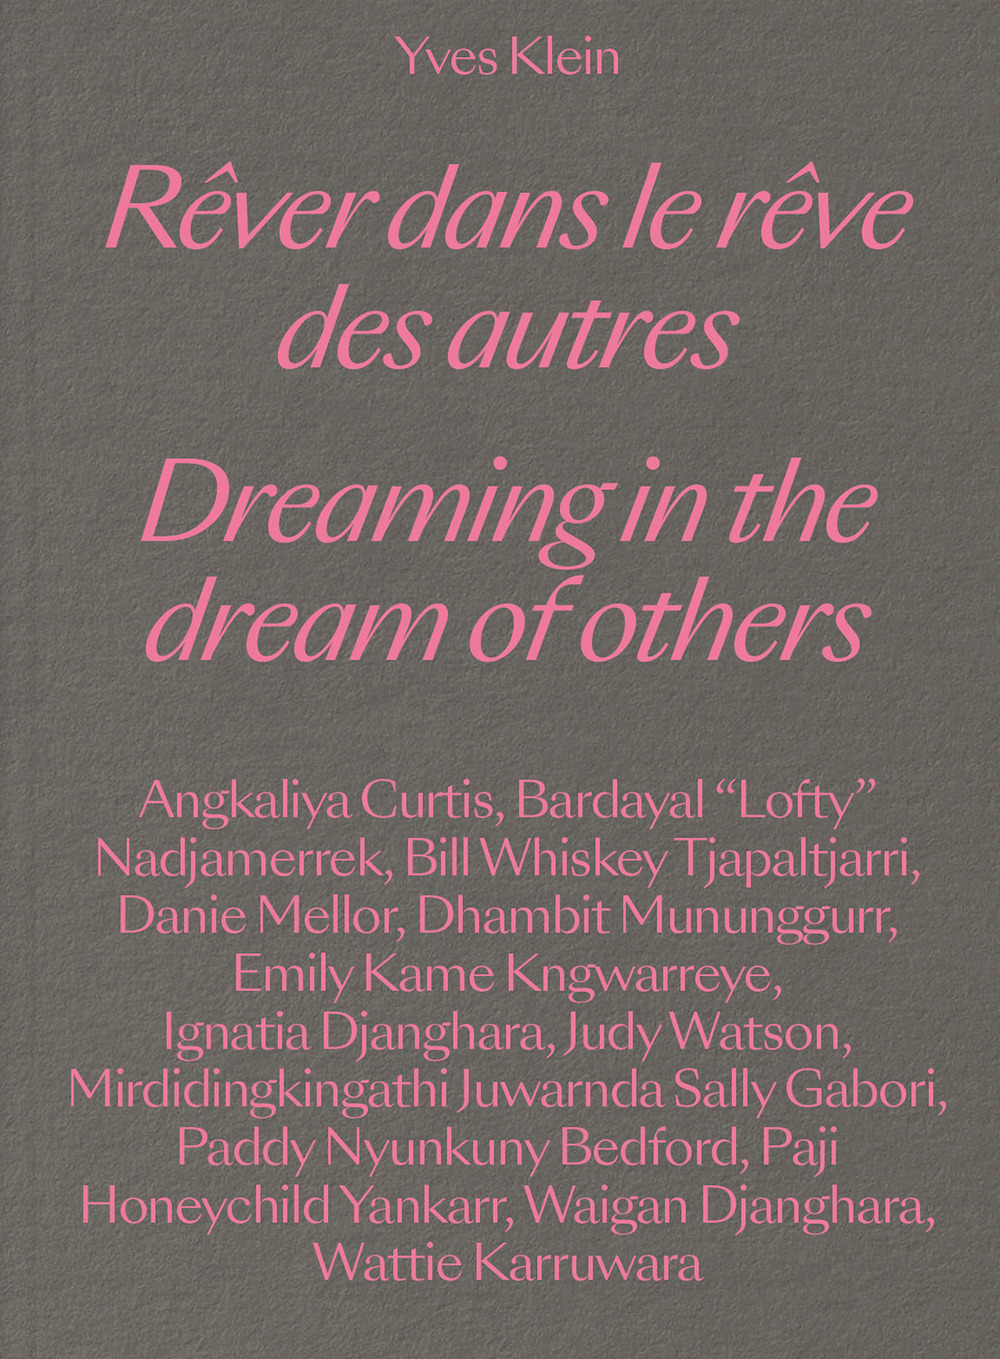 Yves Klein. Dreaming in the dream of others-Rêver dans le rêve des autres. Ediz. bilingue